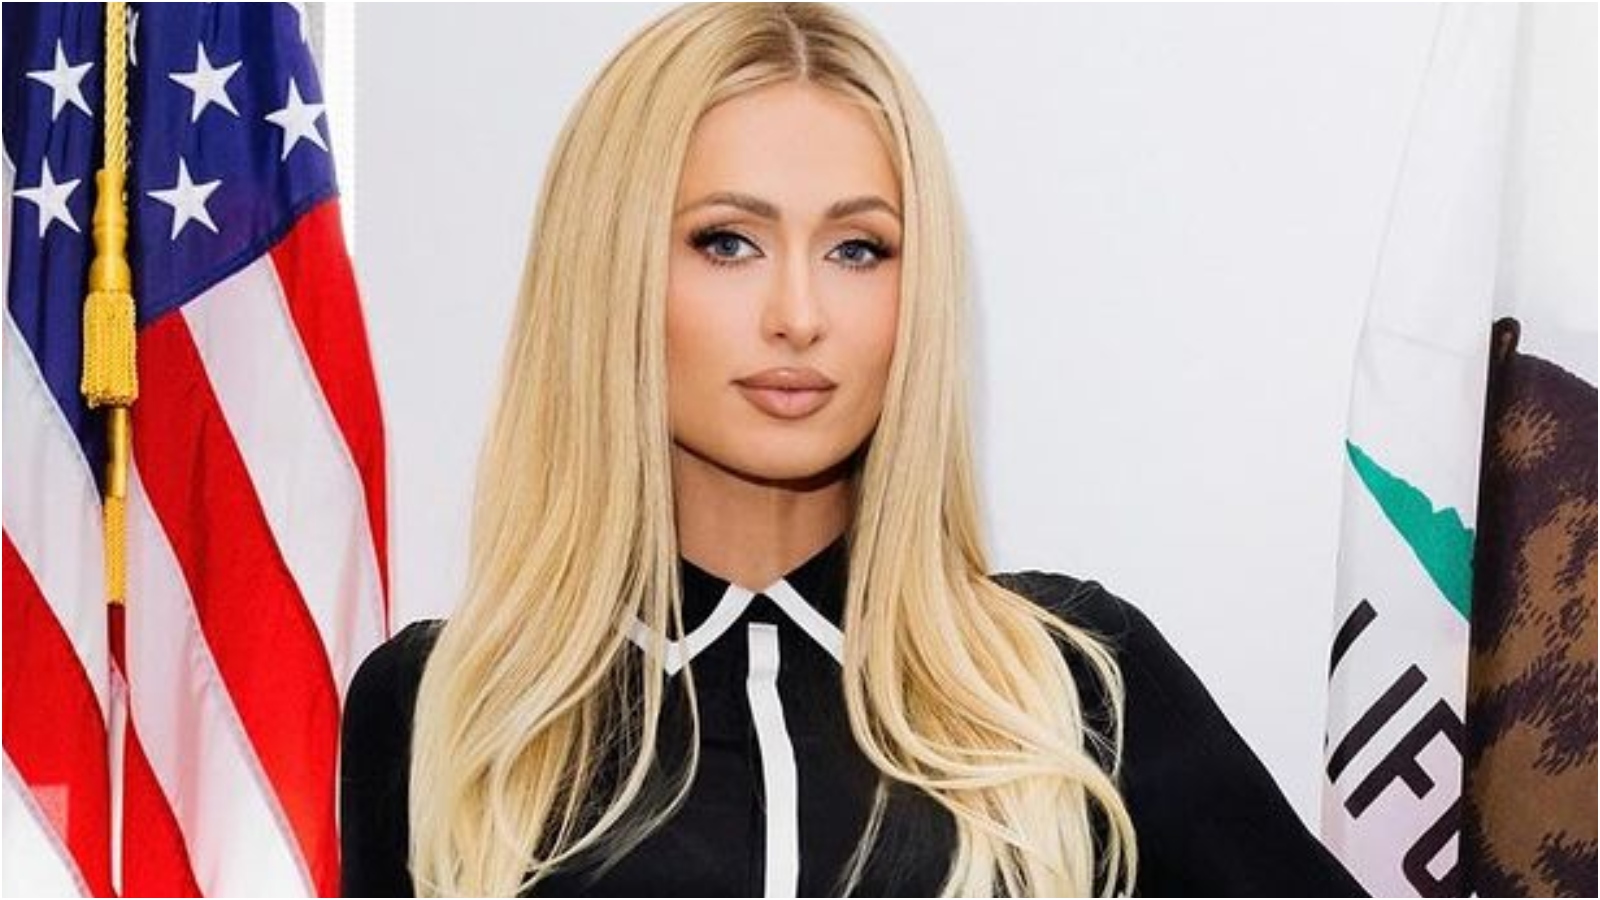 Paris Hilton relata as agressões sofridas na adolescência: ‘Abusos disfarçados de terapia’